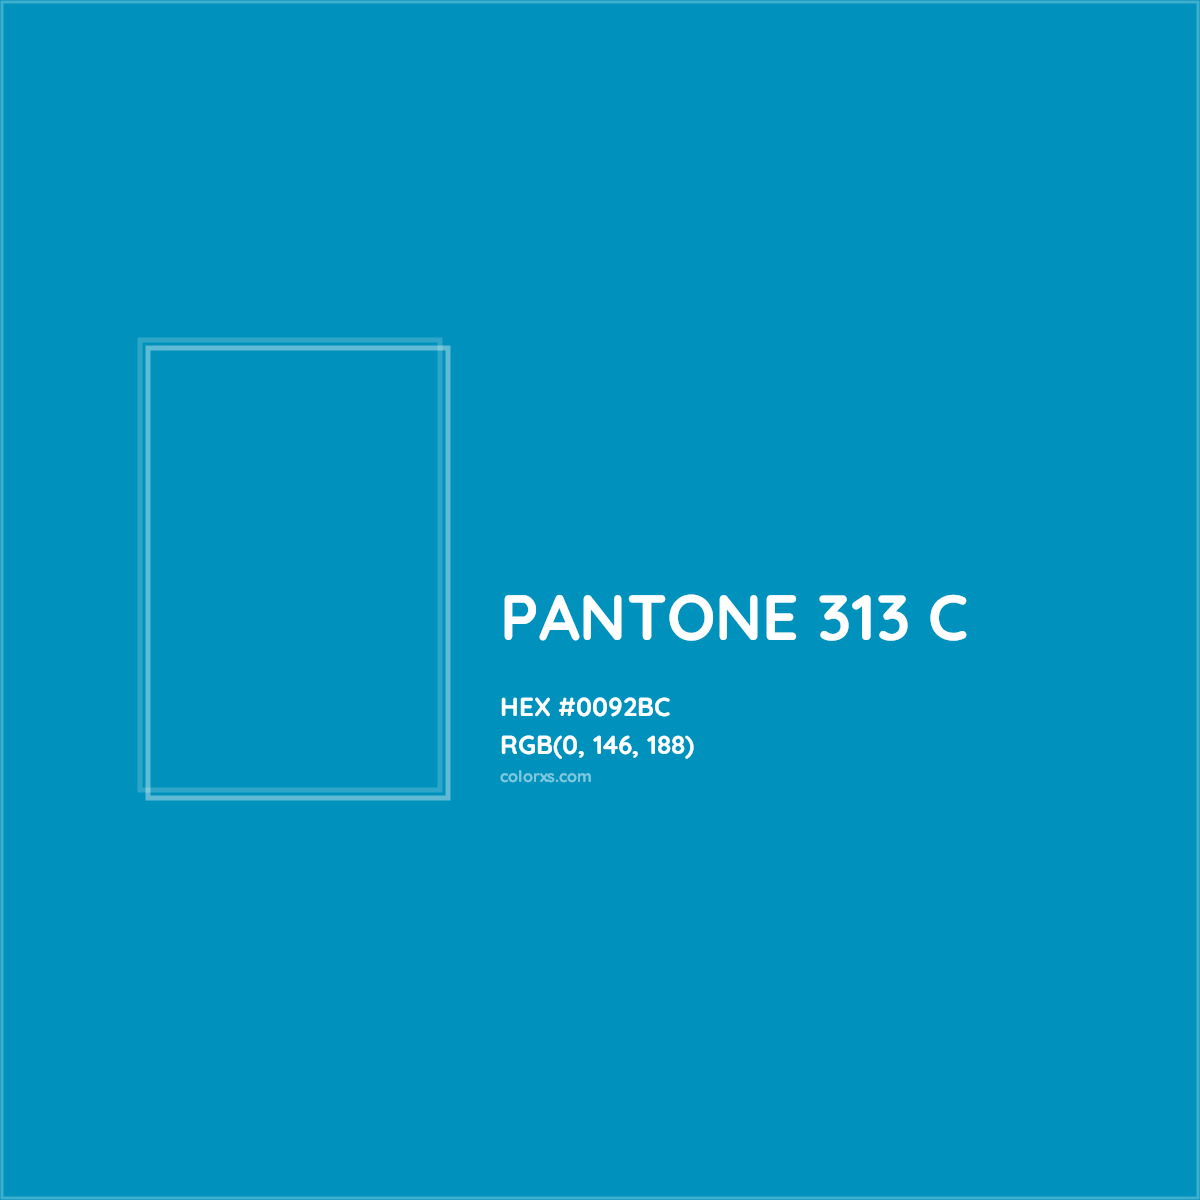 HEX #0092BC PANTONE 313 C CMS Pantone PMS - Color Code